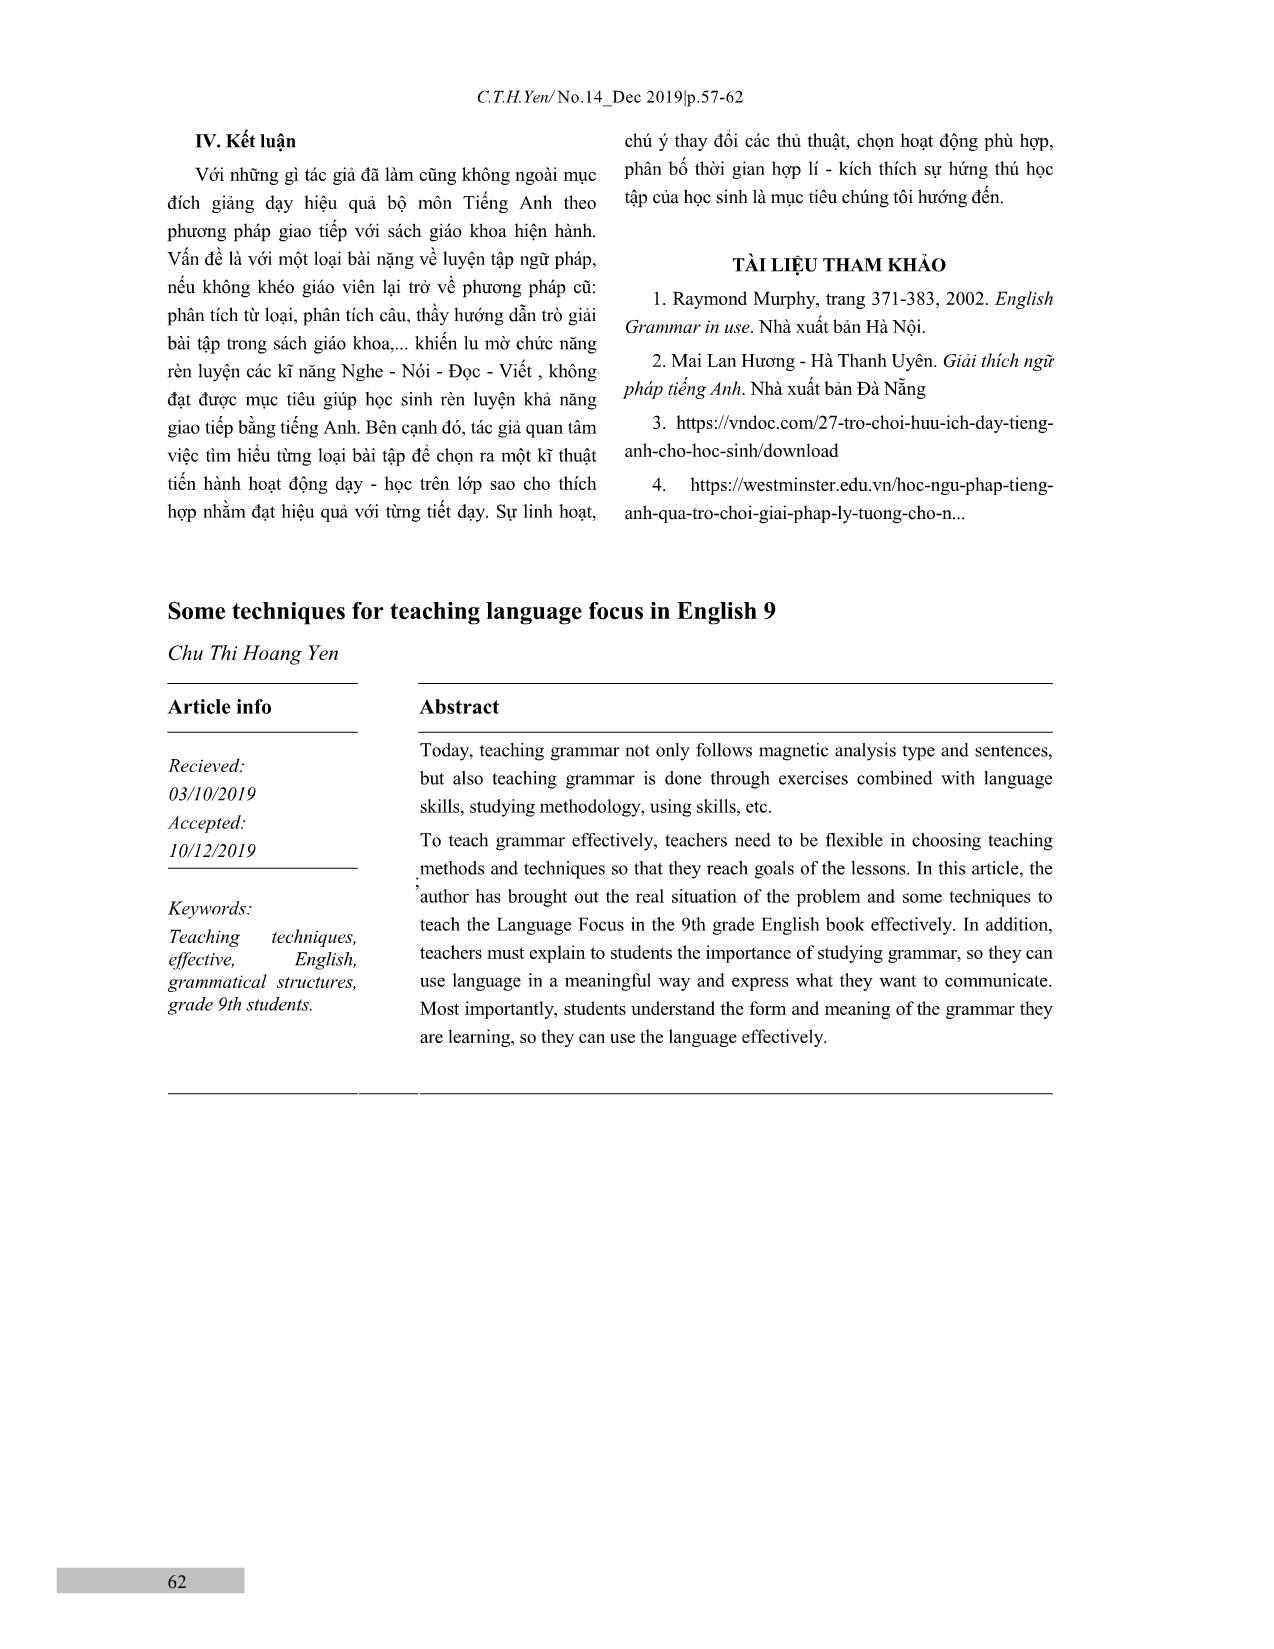 Một số thủ thuật dạy phần Language Focus trong sách Tiếng Anh lớp 9 trang 6